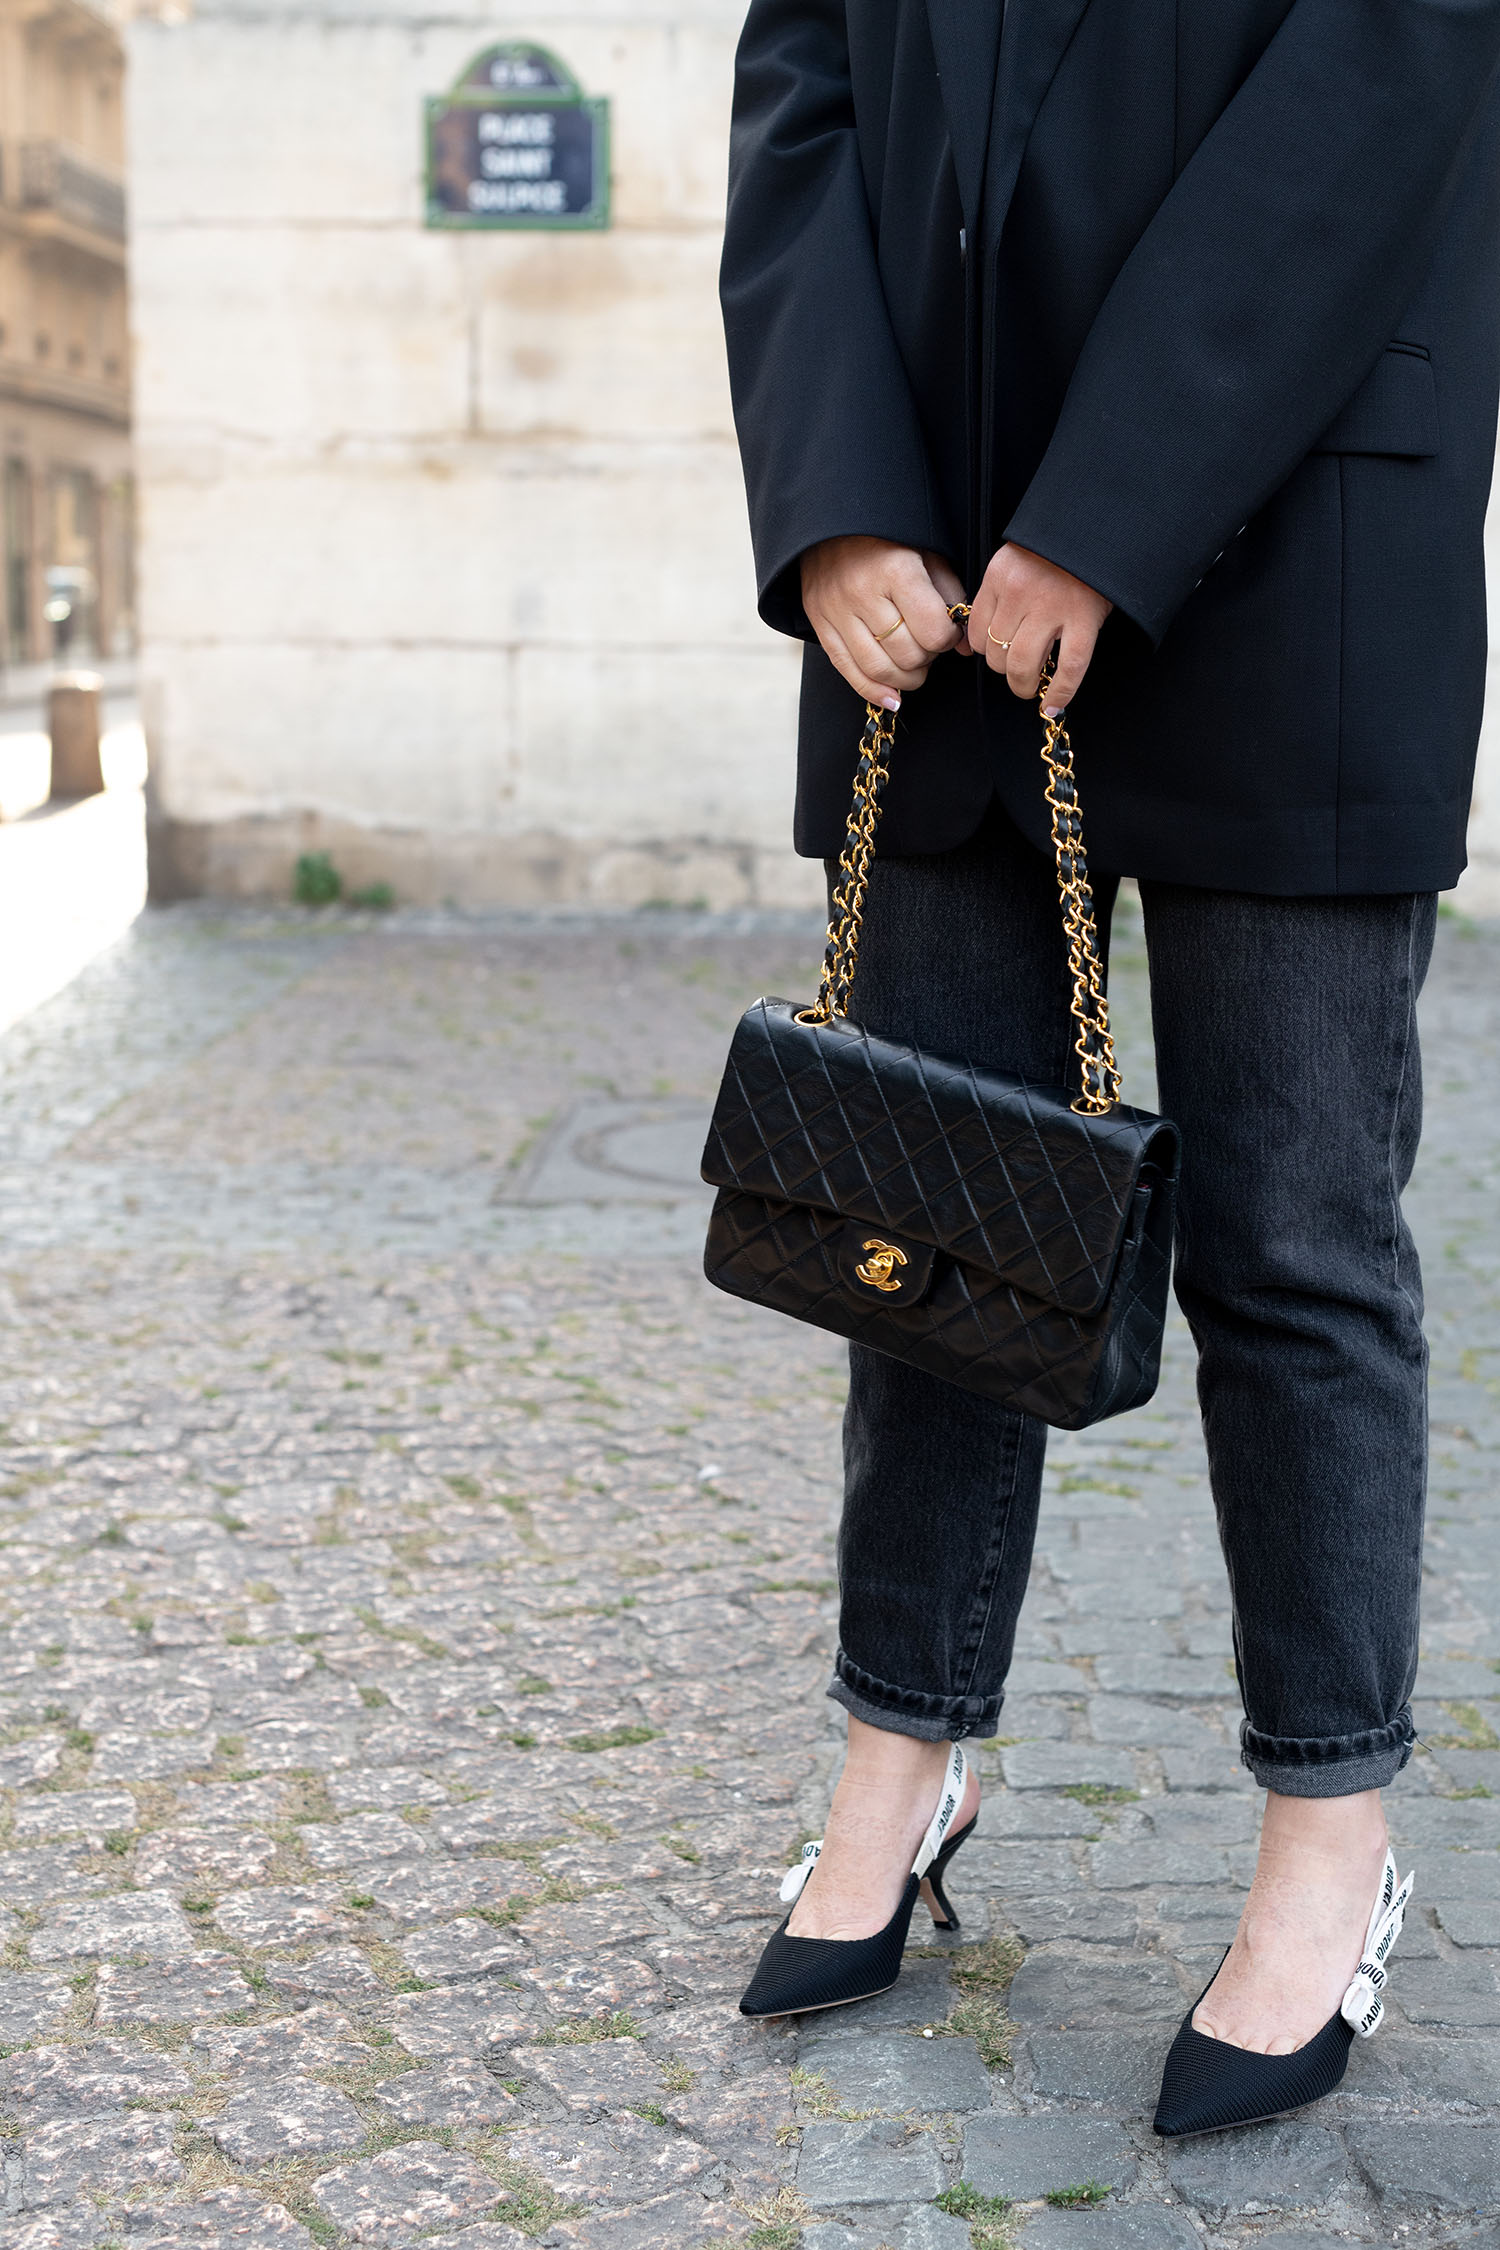 Coco & Voltaire - Dior J'Adior pumps, Chanel handbag, Zara jeans